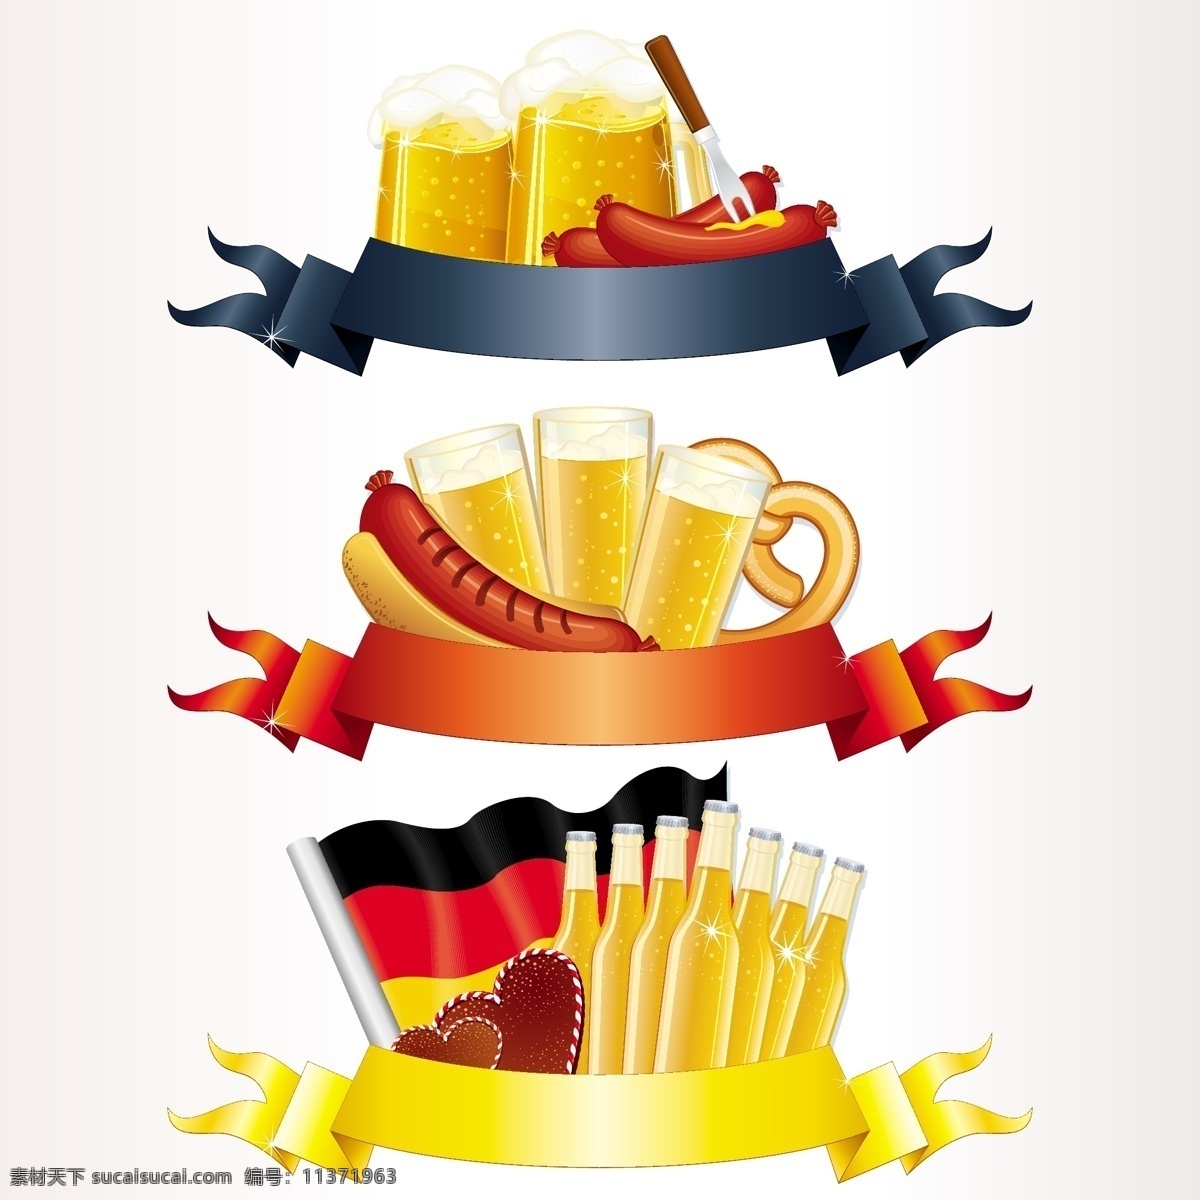 慕尼黑 啤酒节 标签 插画 德国 枫叶 烤肠 麦穗 啤酒 旗帜 十月 矢量图 慕尼黑啤酒节 香肠 其他矢量图